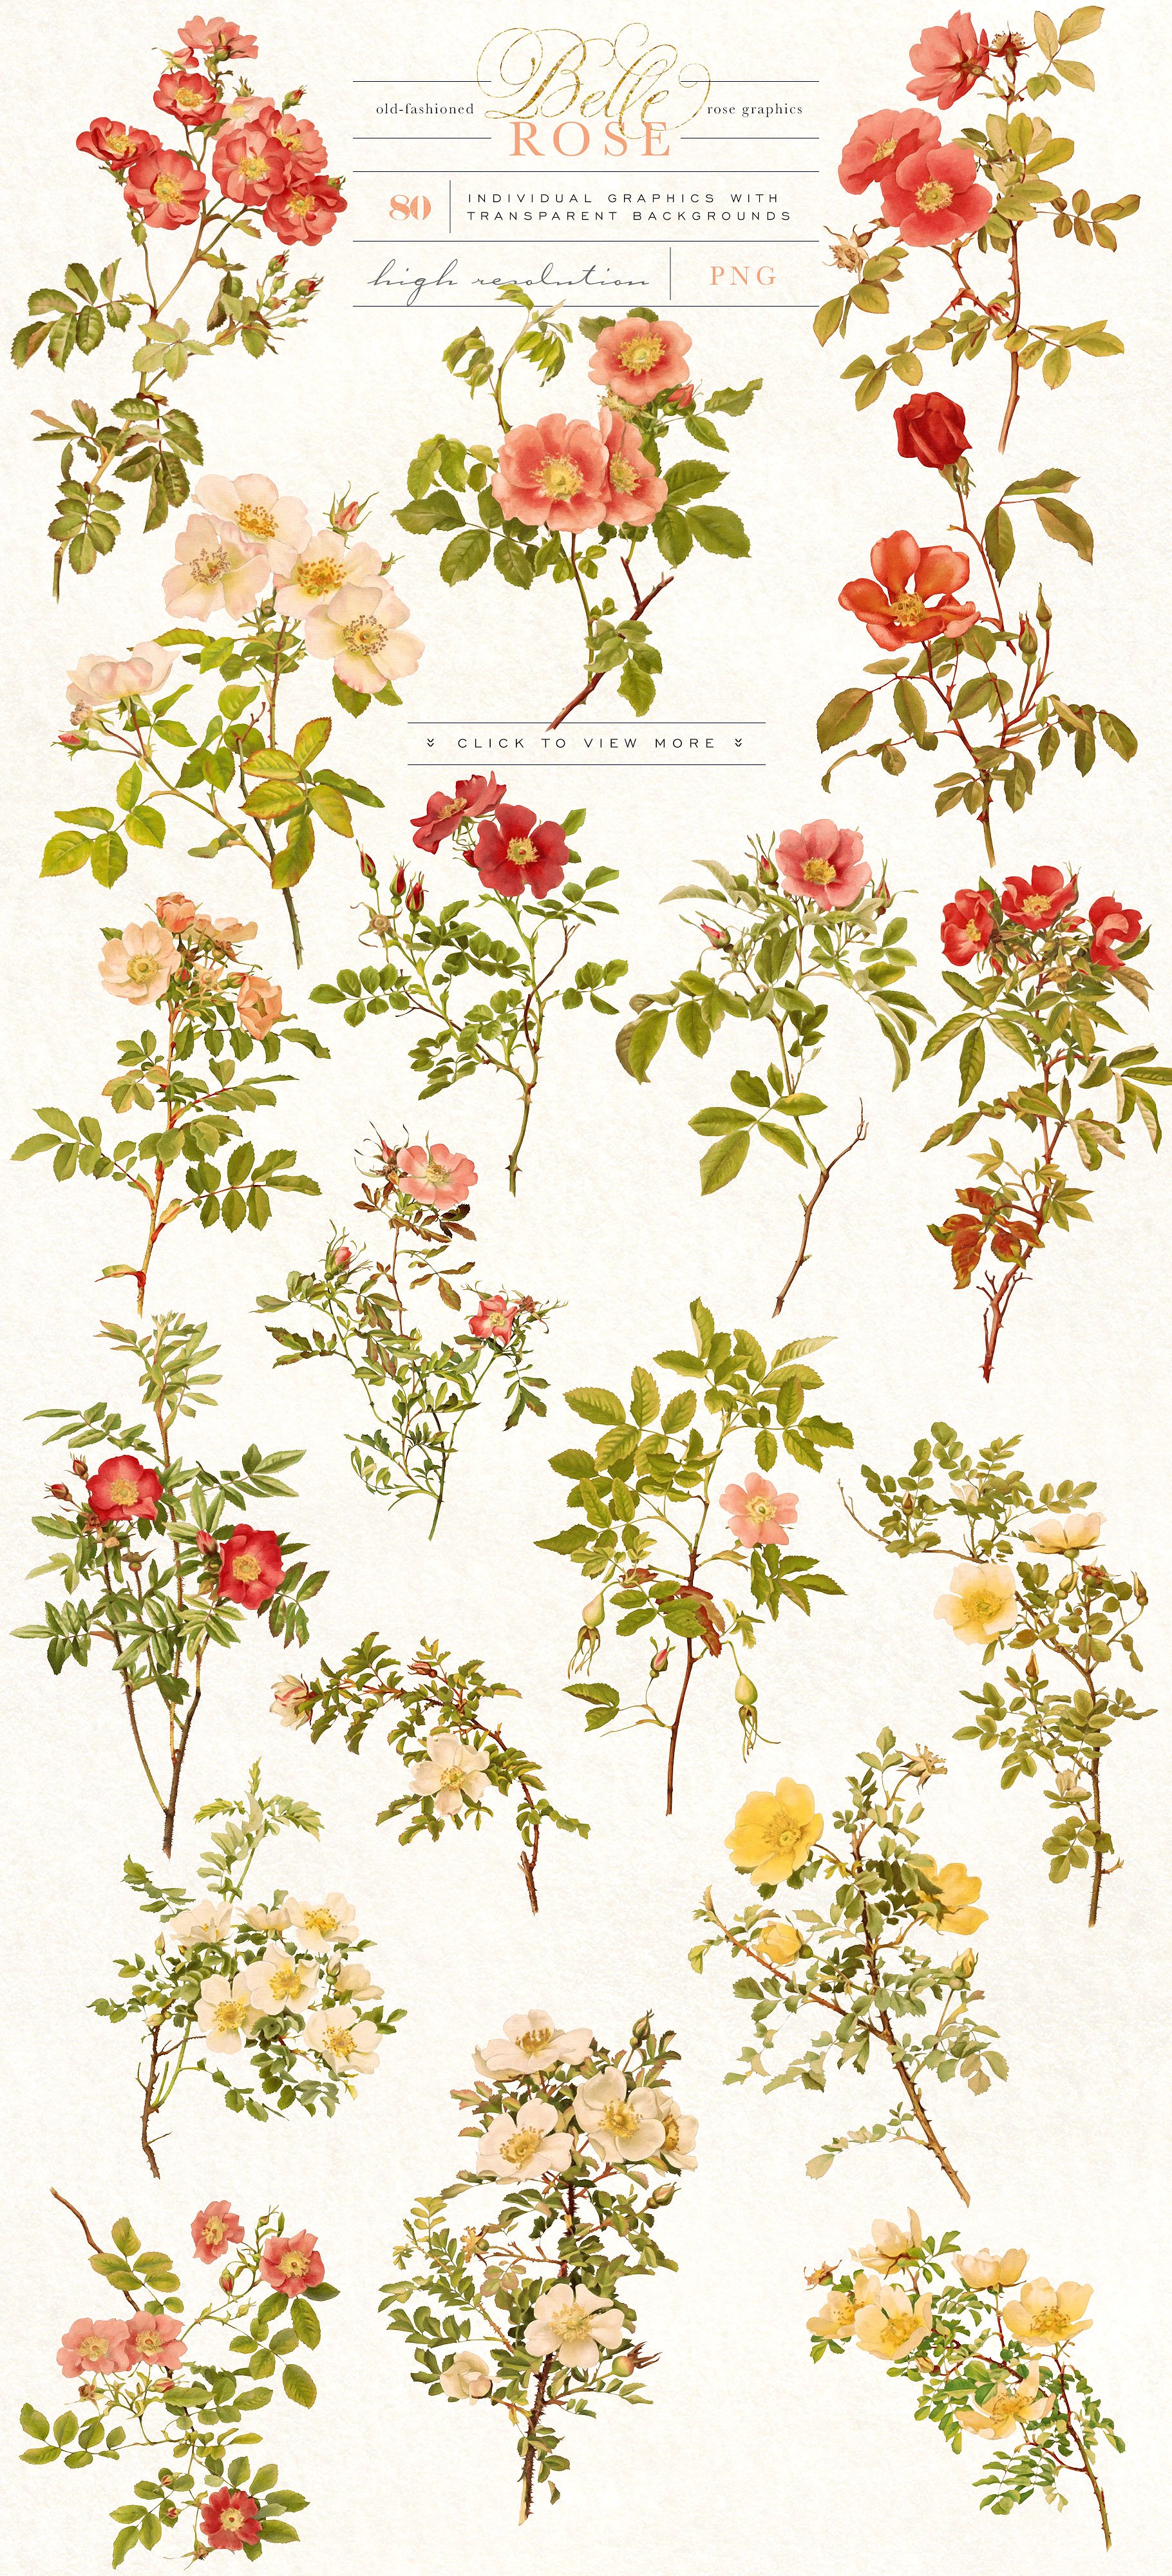 复古手绘水彩玫瑰花卉设计素材 Belle-Rose-Anti